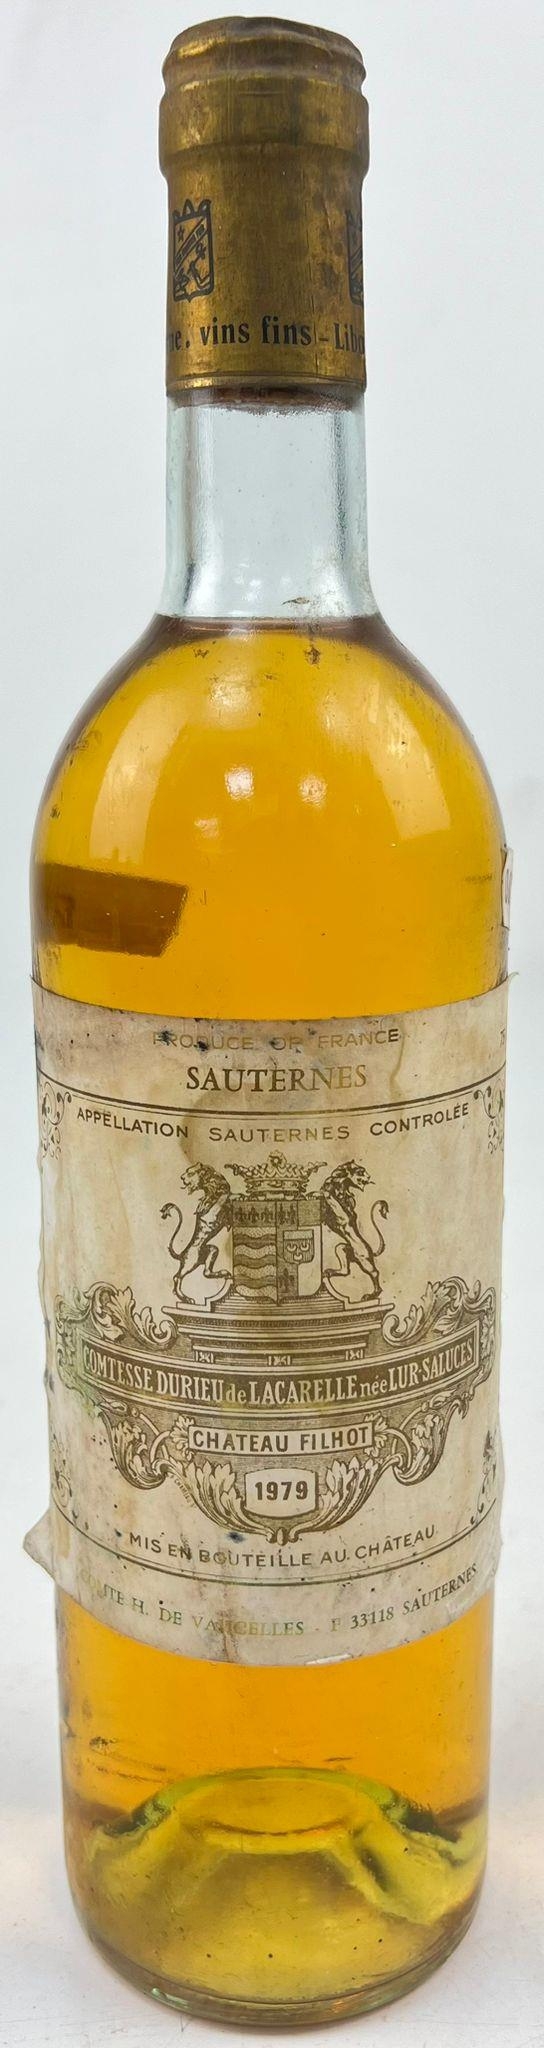 A Bottle of 1979 Sauternes - Chateau Filhot.